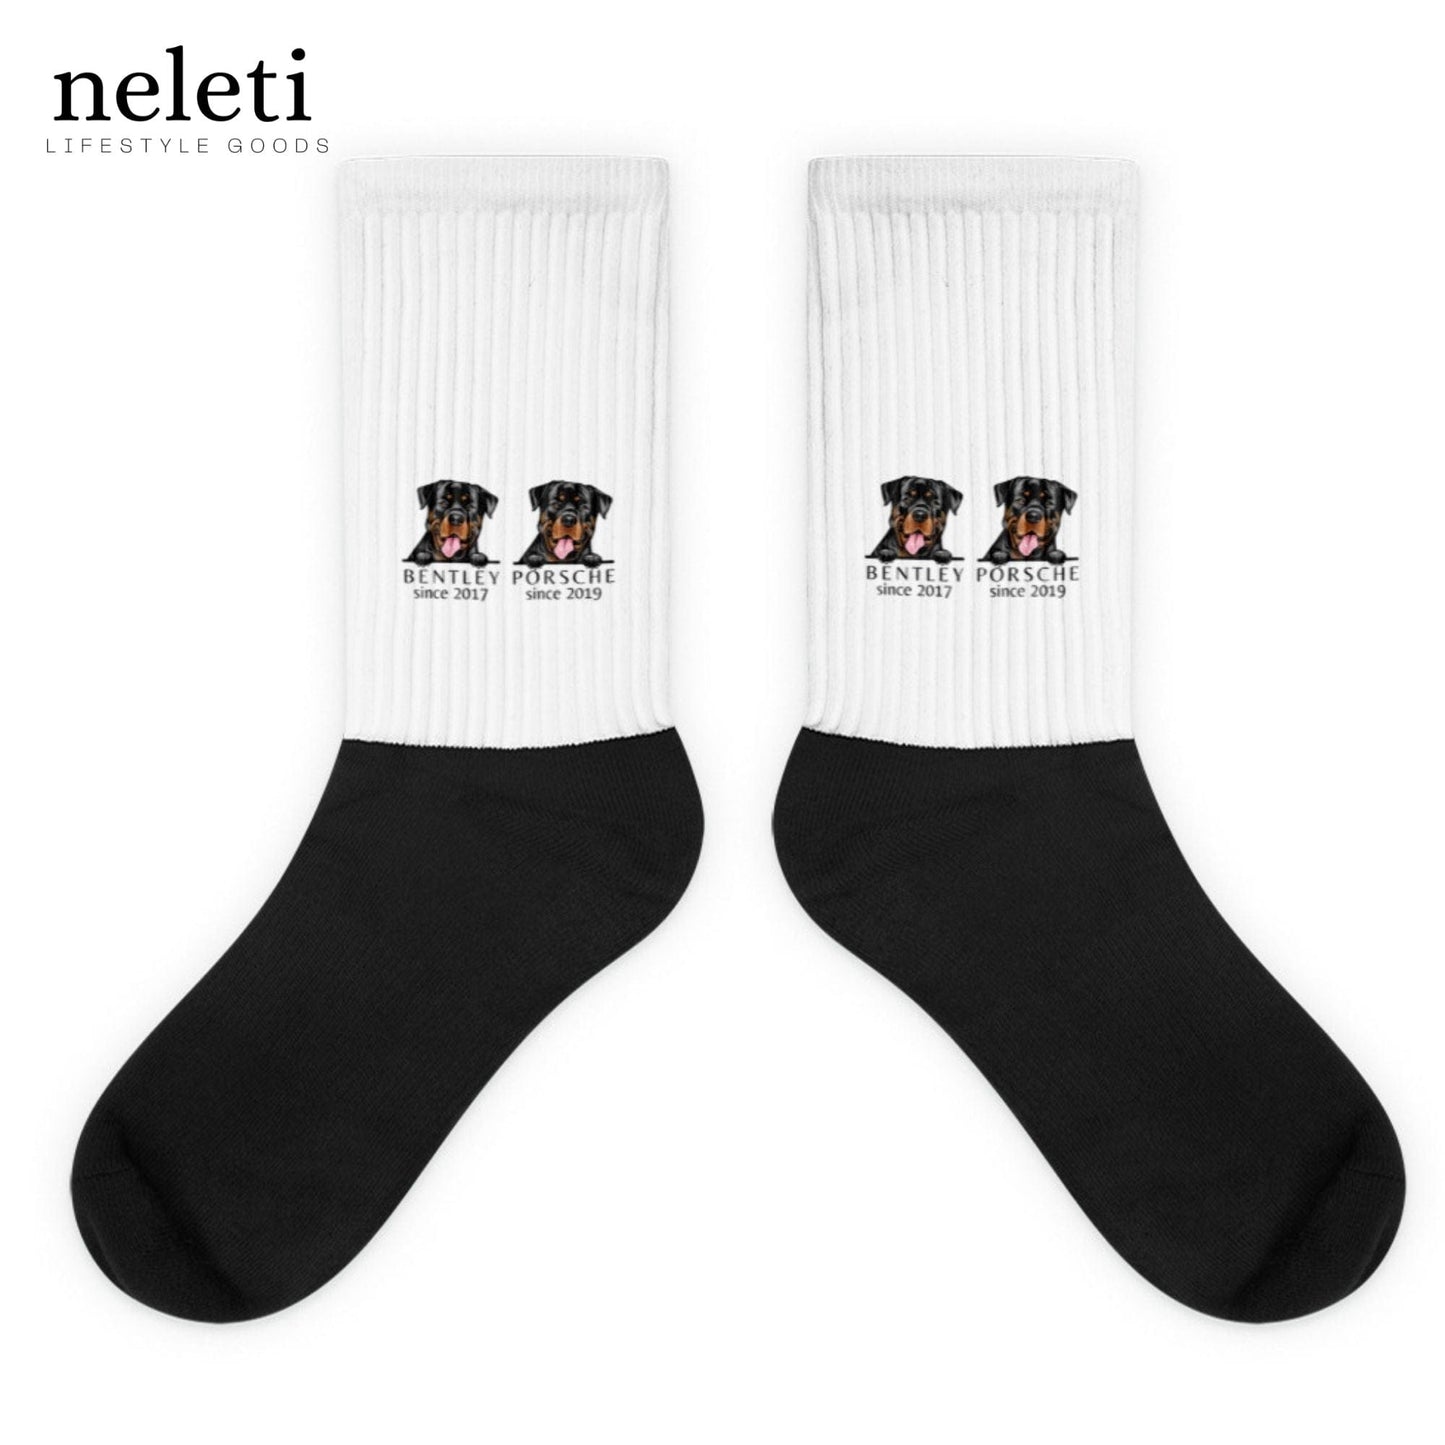 neleti.com-custom-white-socks-for-dog-lovers